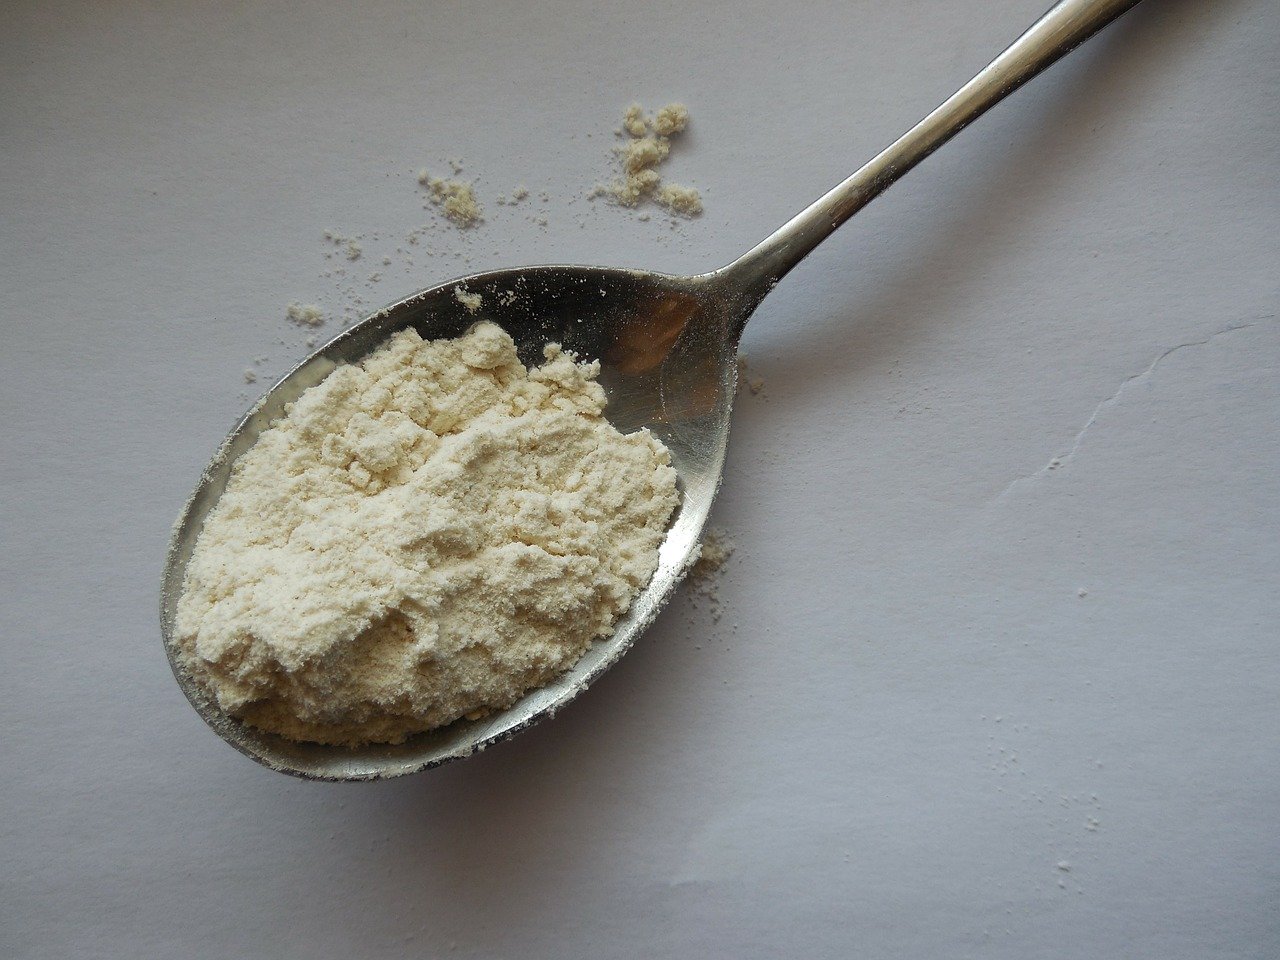 Σπιτικό μπέικιν πάουντερ (αντικατάσταση baking powder)